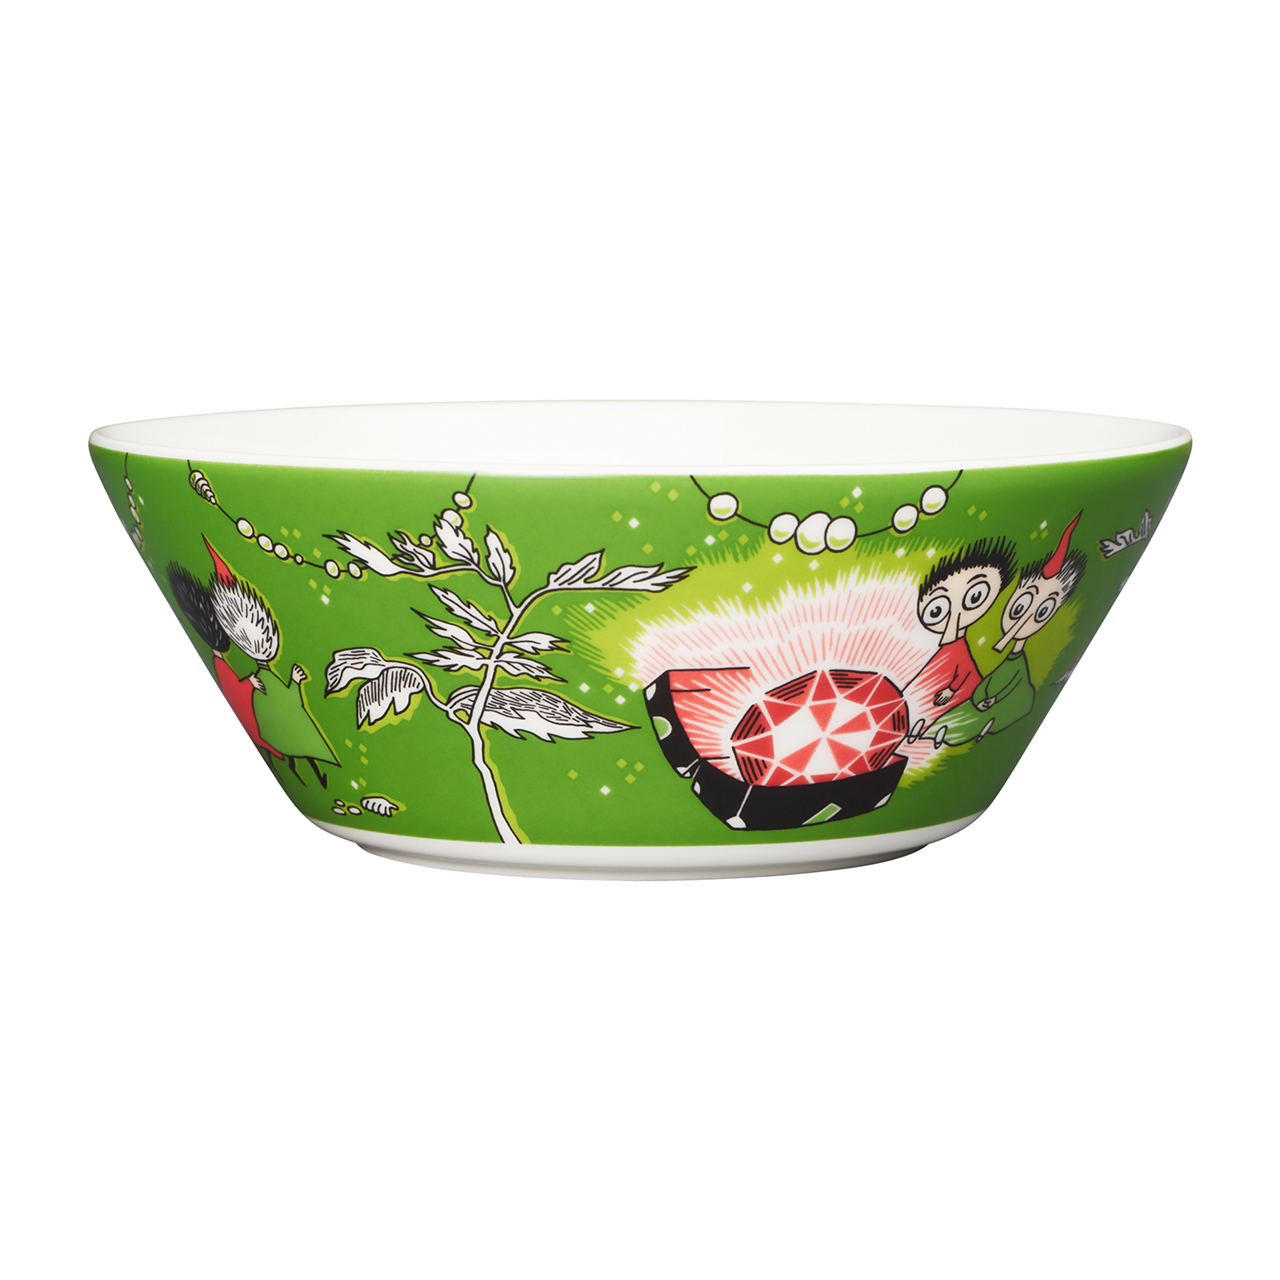 1025548_Moomin_moomin-bowl-15cm-thingumy-and-bob-green_01.jpg